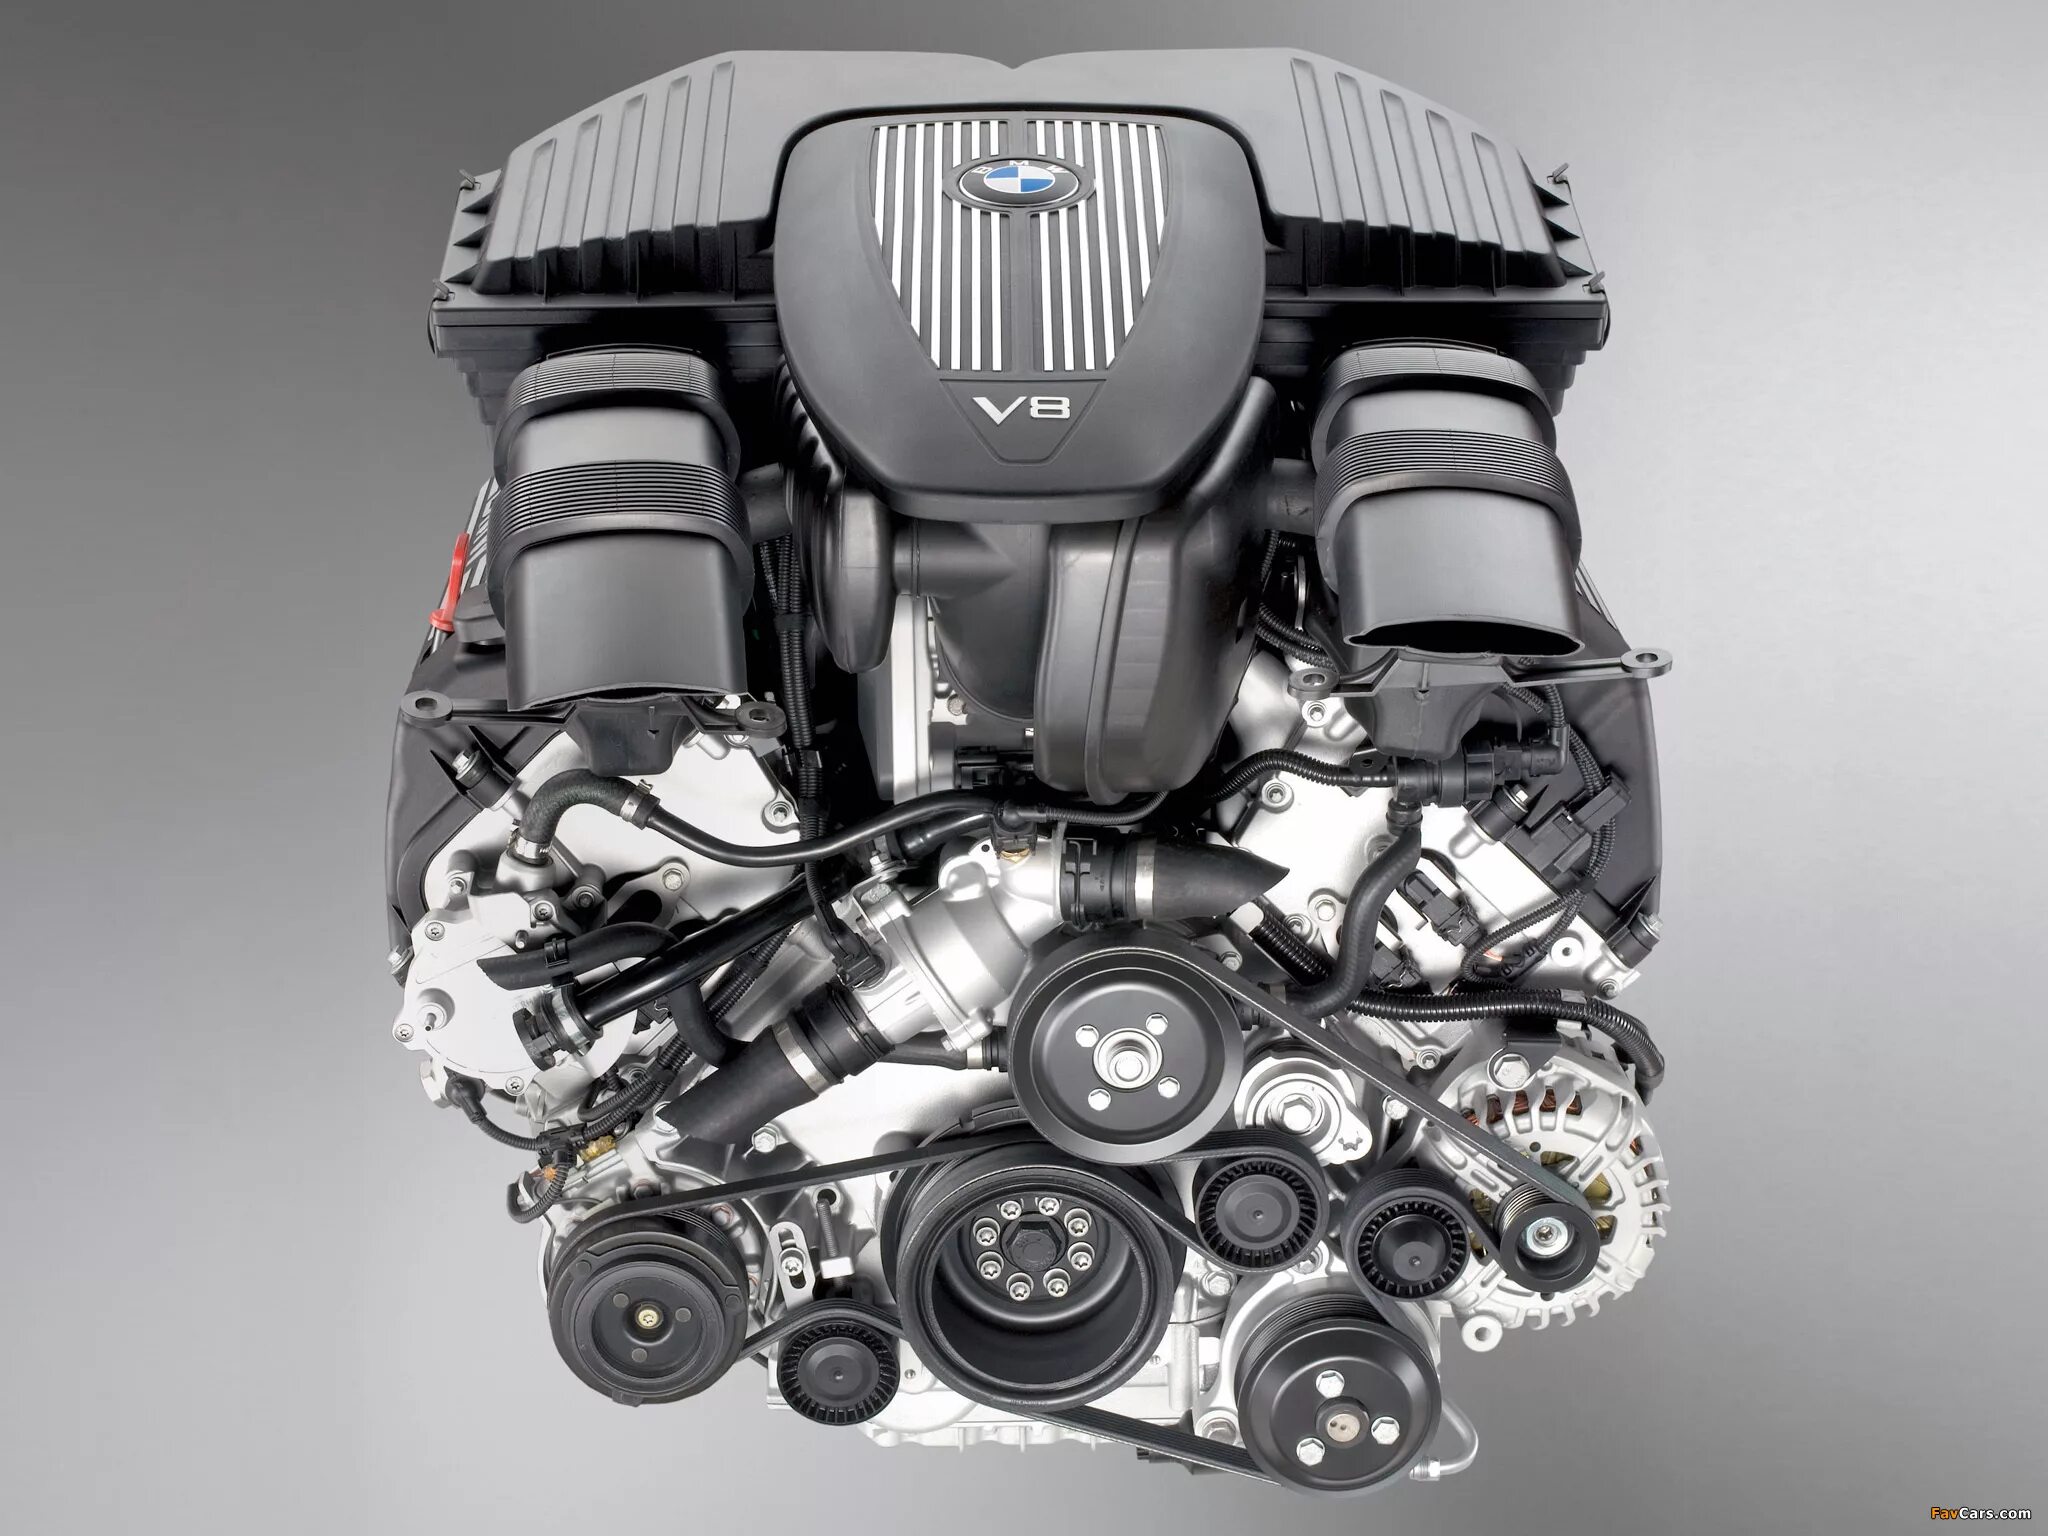 48 n 5. BMW v8 n62. Мотор 4.8 БМВ е70. BMW e70 4.8 двигатель. BMW x5 e53 мотор.